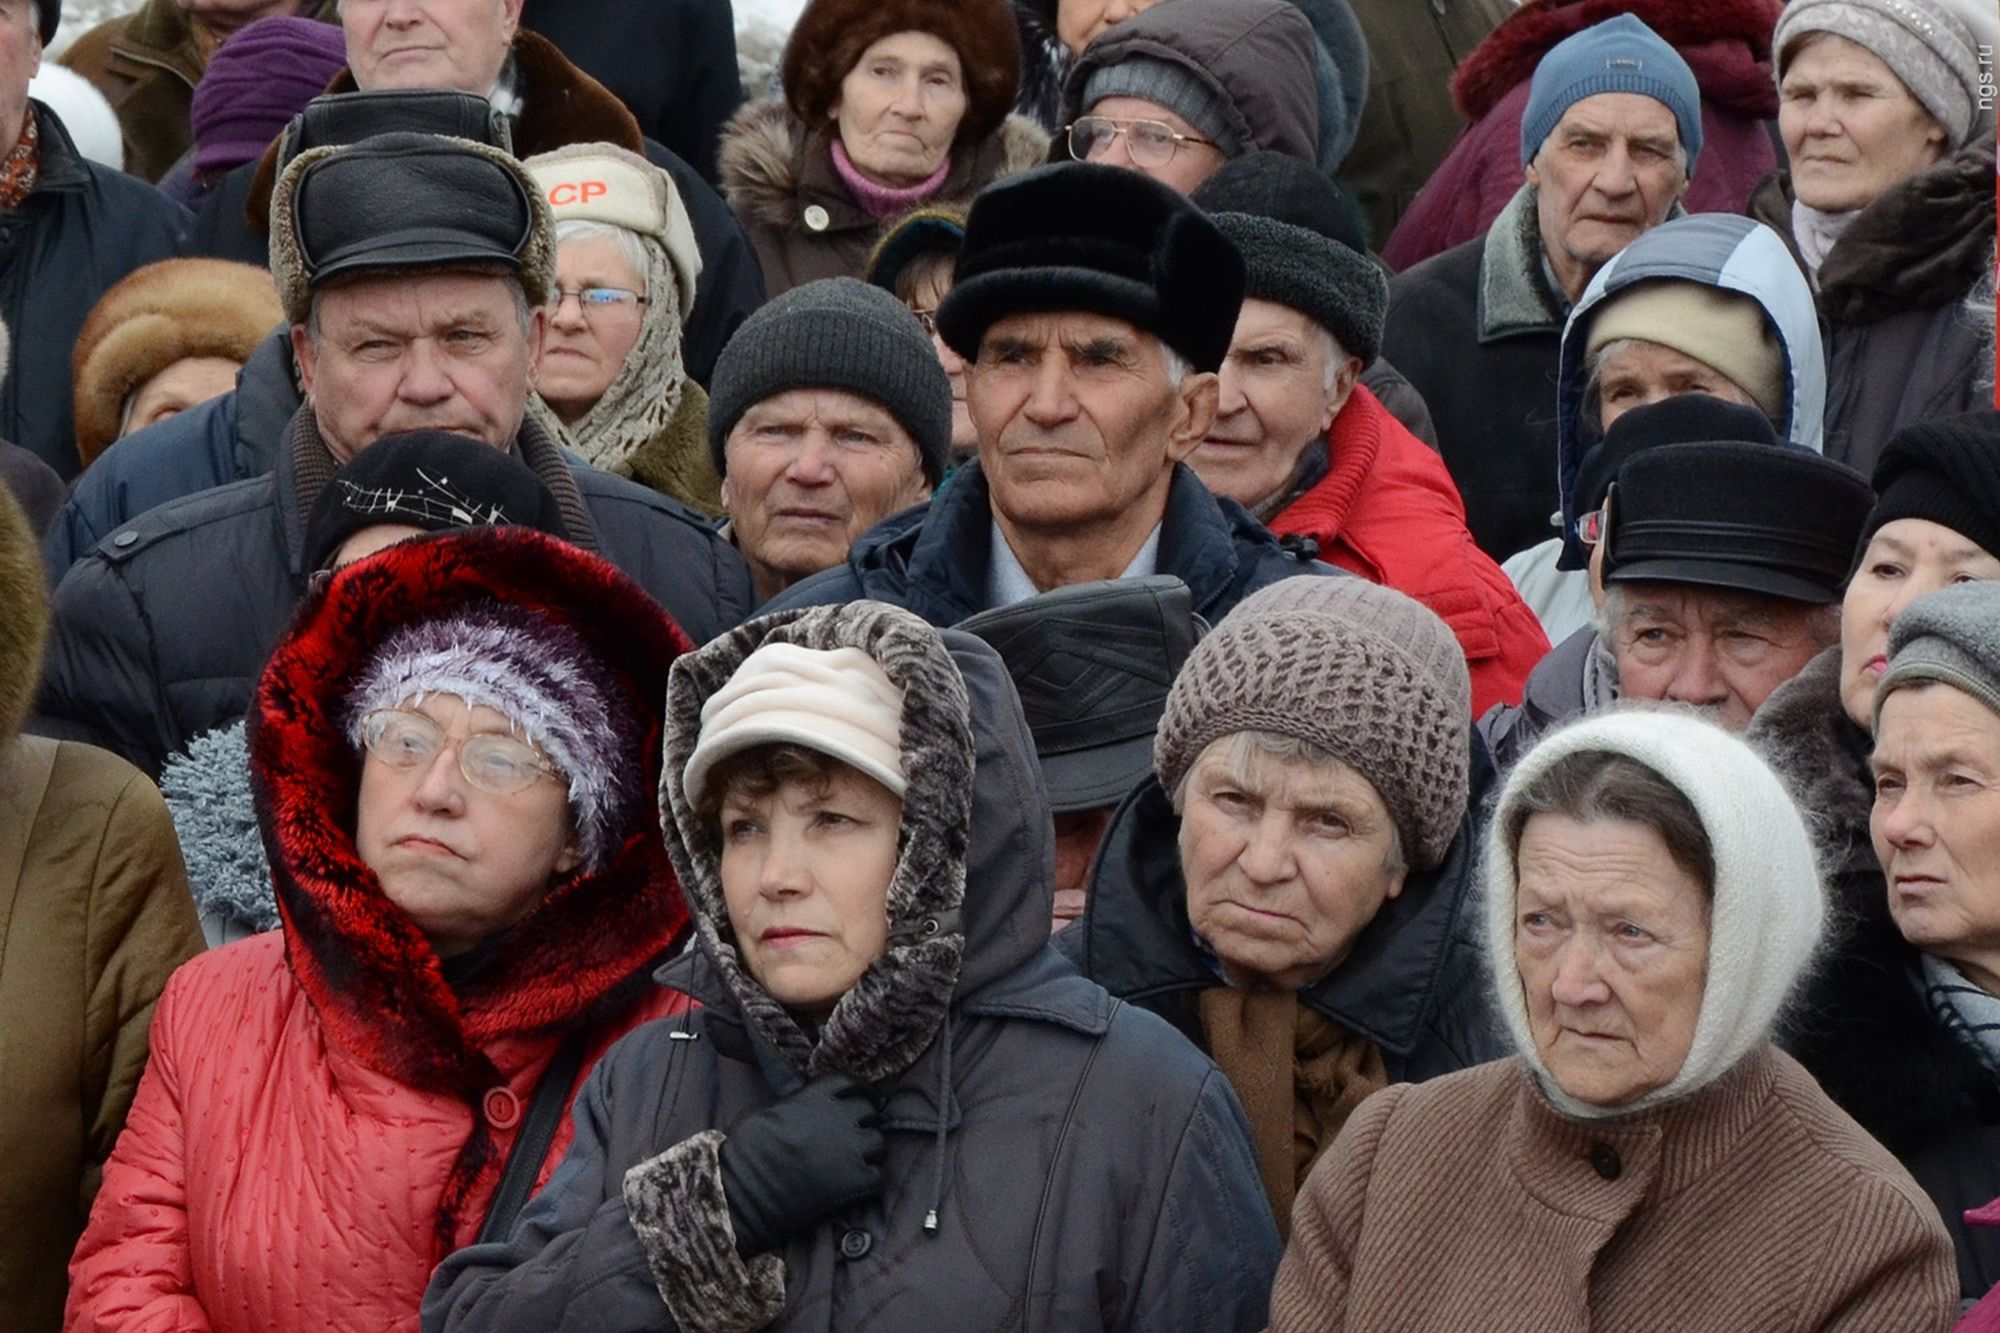 Сколько пенсионеров в России на год? Прогноз их количества на, 2019, 2020 годы